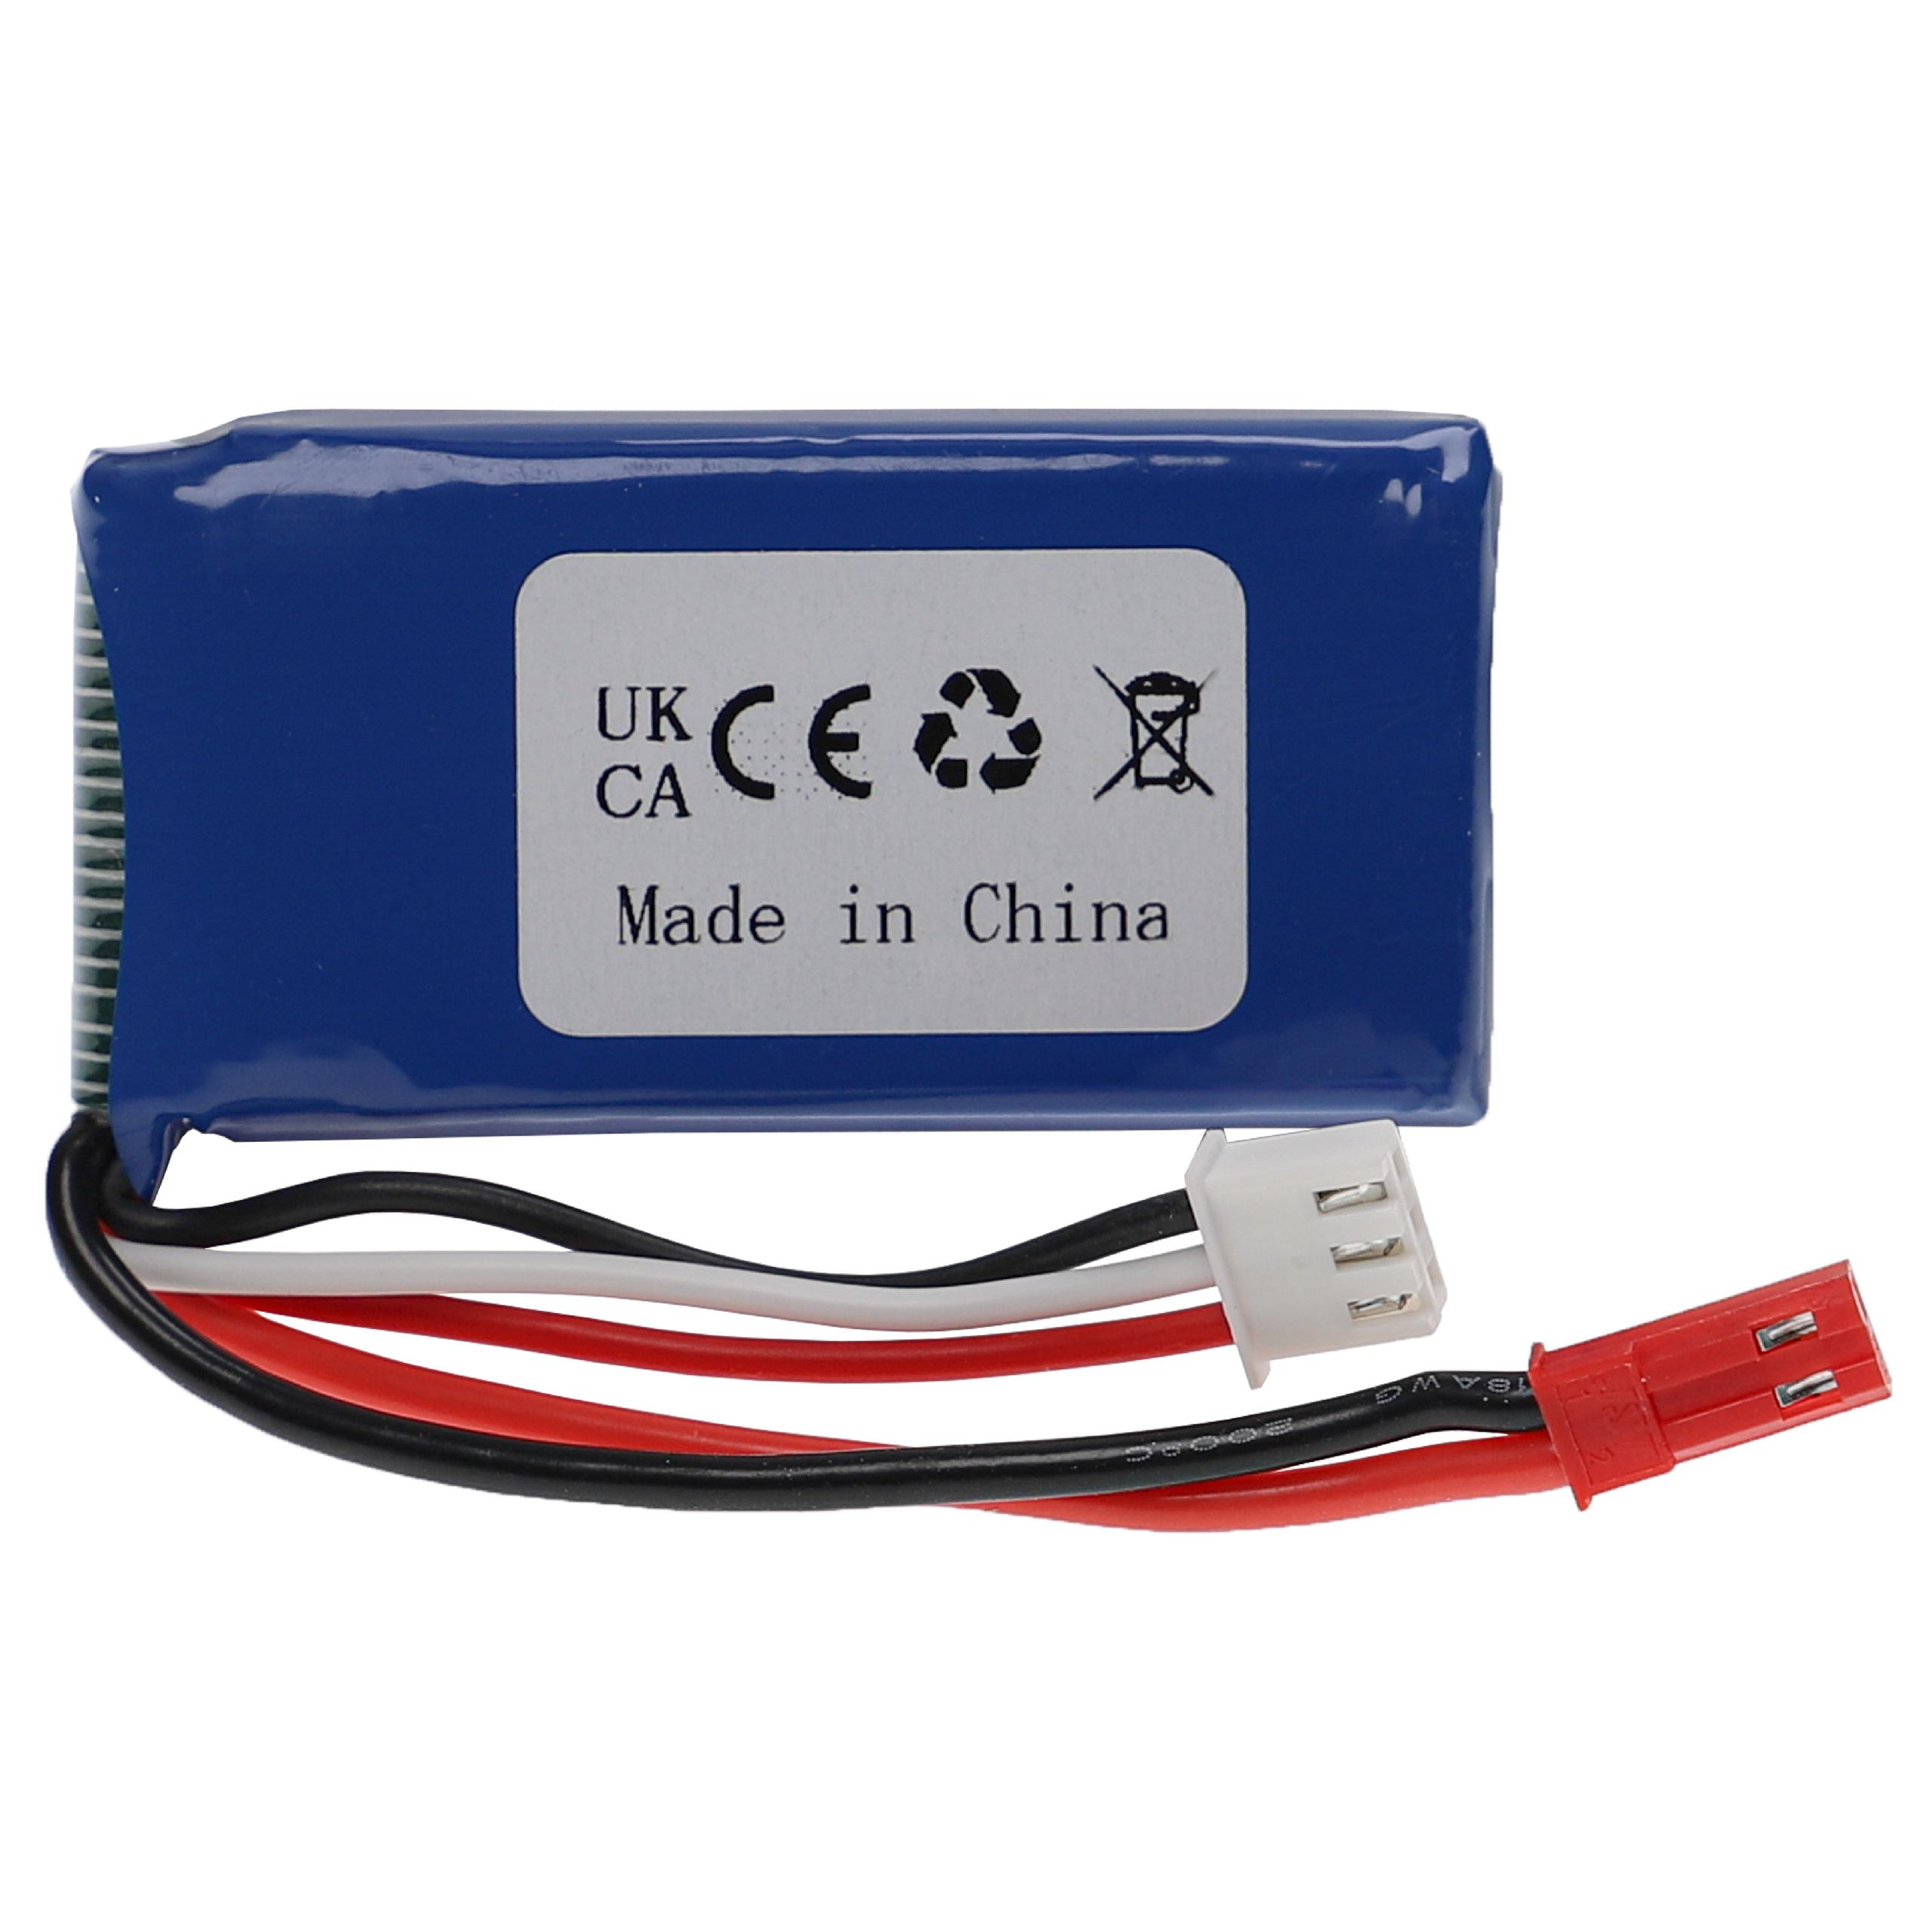 Batterie pour modèle radio-télécommandé - 800mAh 7,4V Li-polymère, BEC